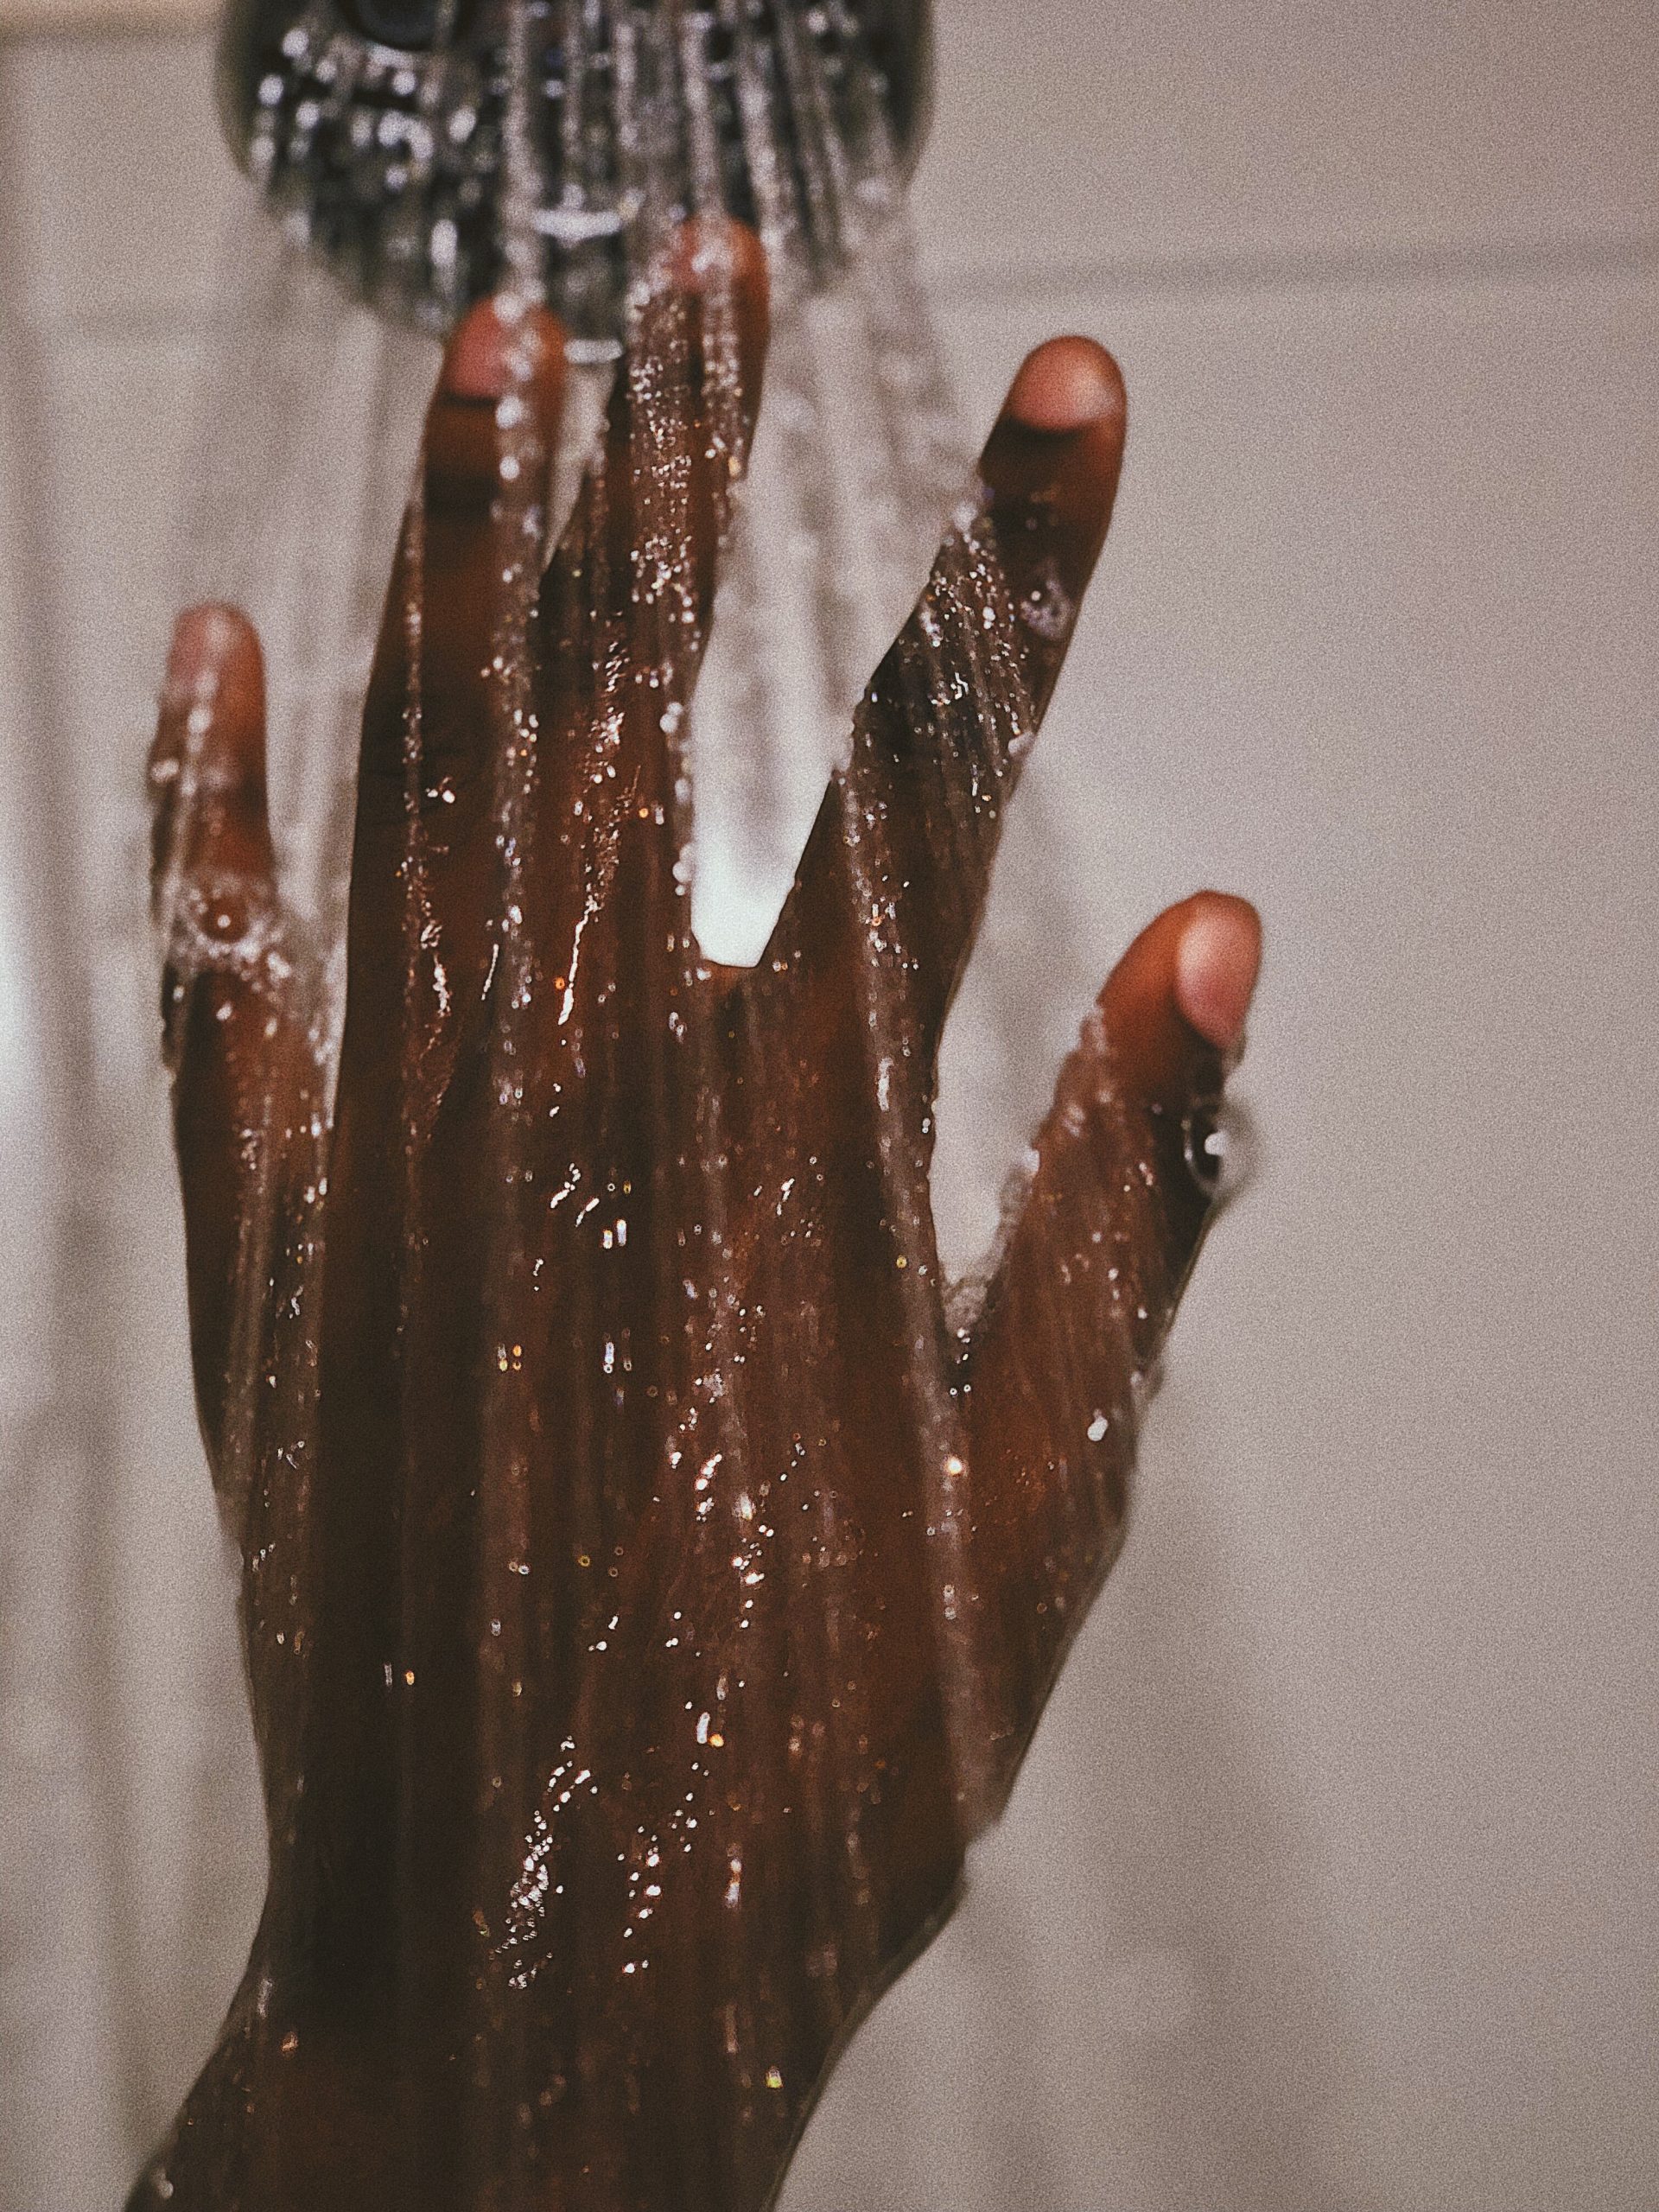 Schwarze Hand greift in den Wasserstrahl einer Dusche. Für viele Menschen ist der Zugang zu sauberem Wasser nicht selbstverständlich.